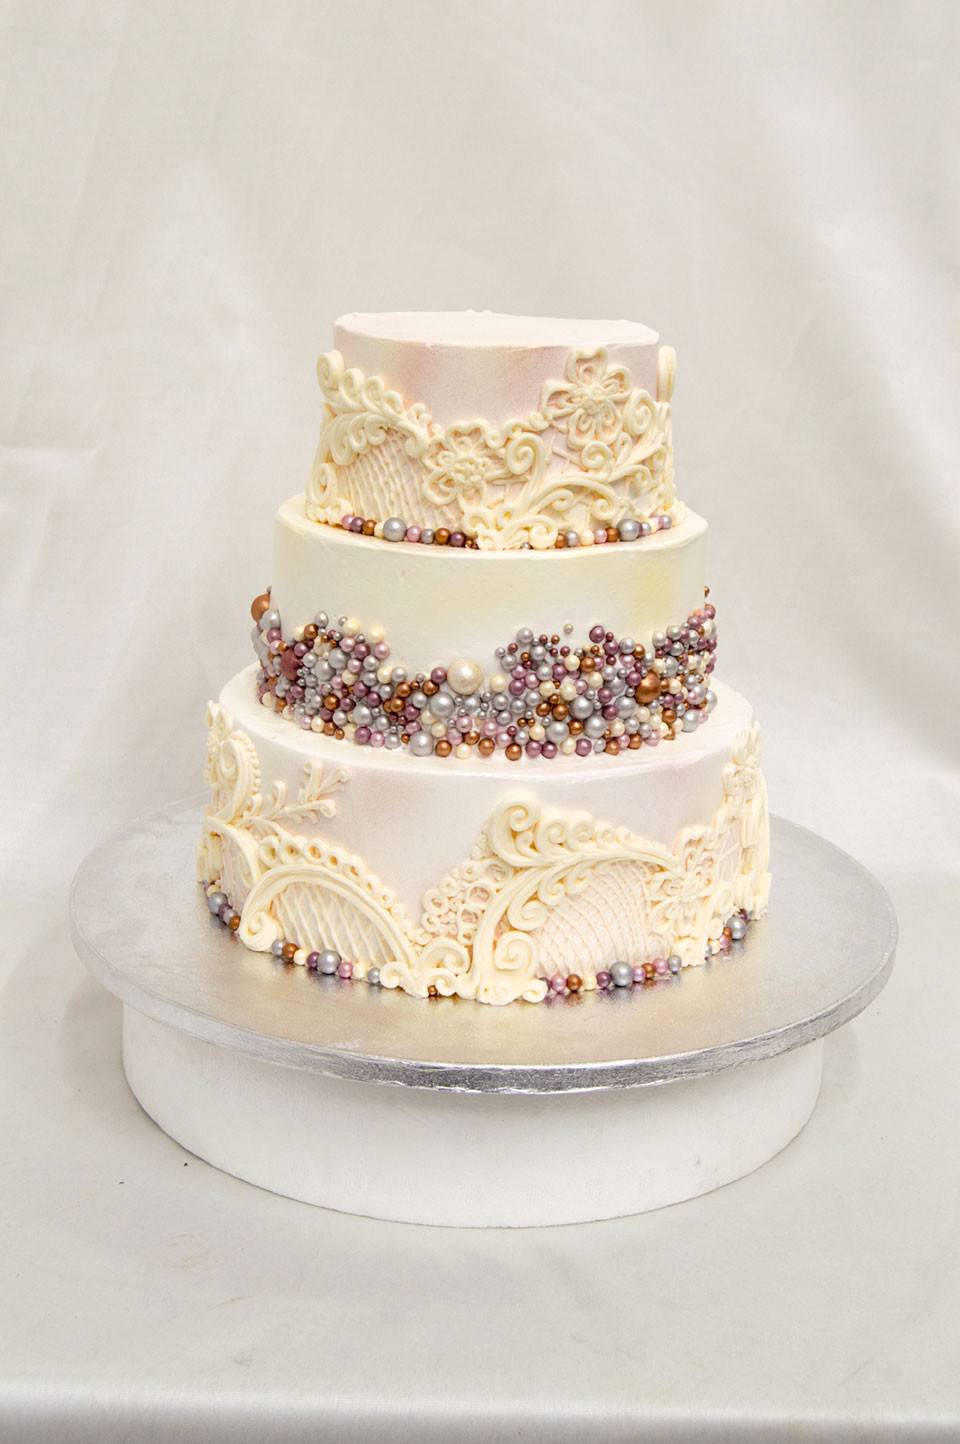 Wedding Cakes Canton Ohio
 Wedding Cakes Cake Decorating